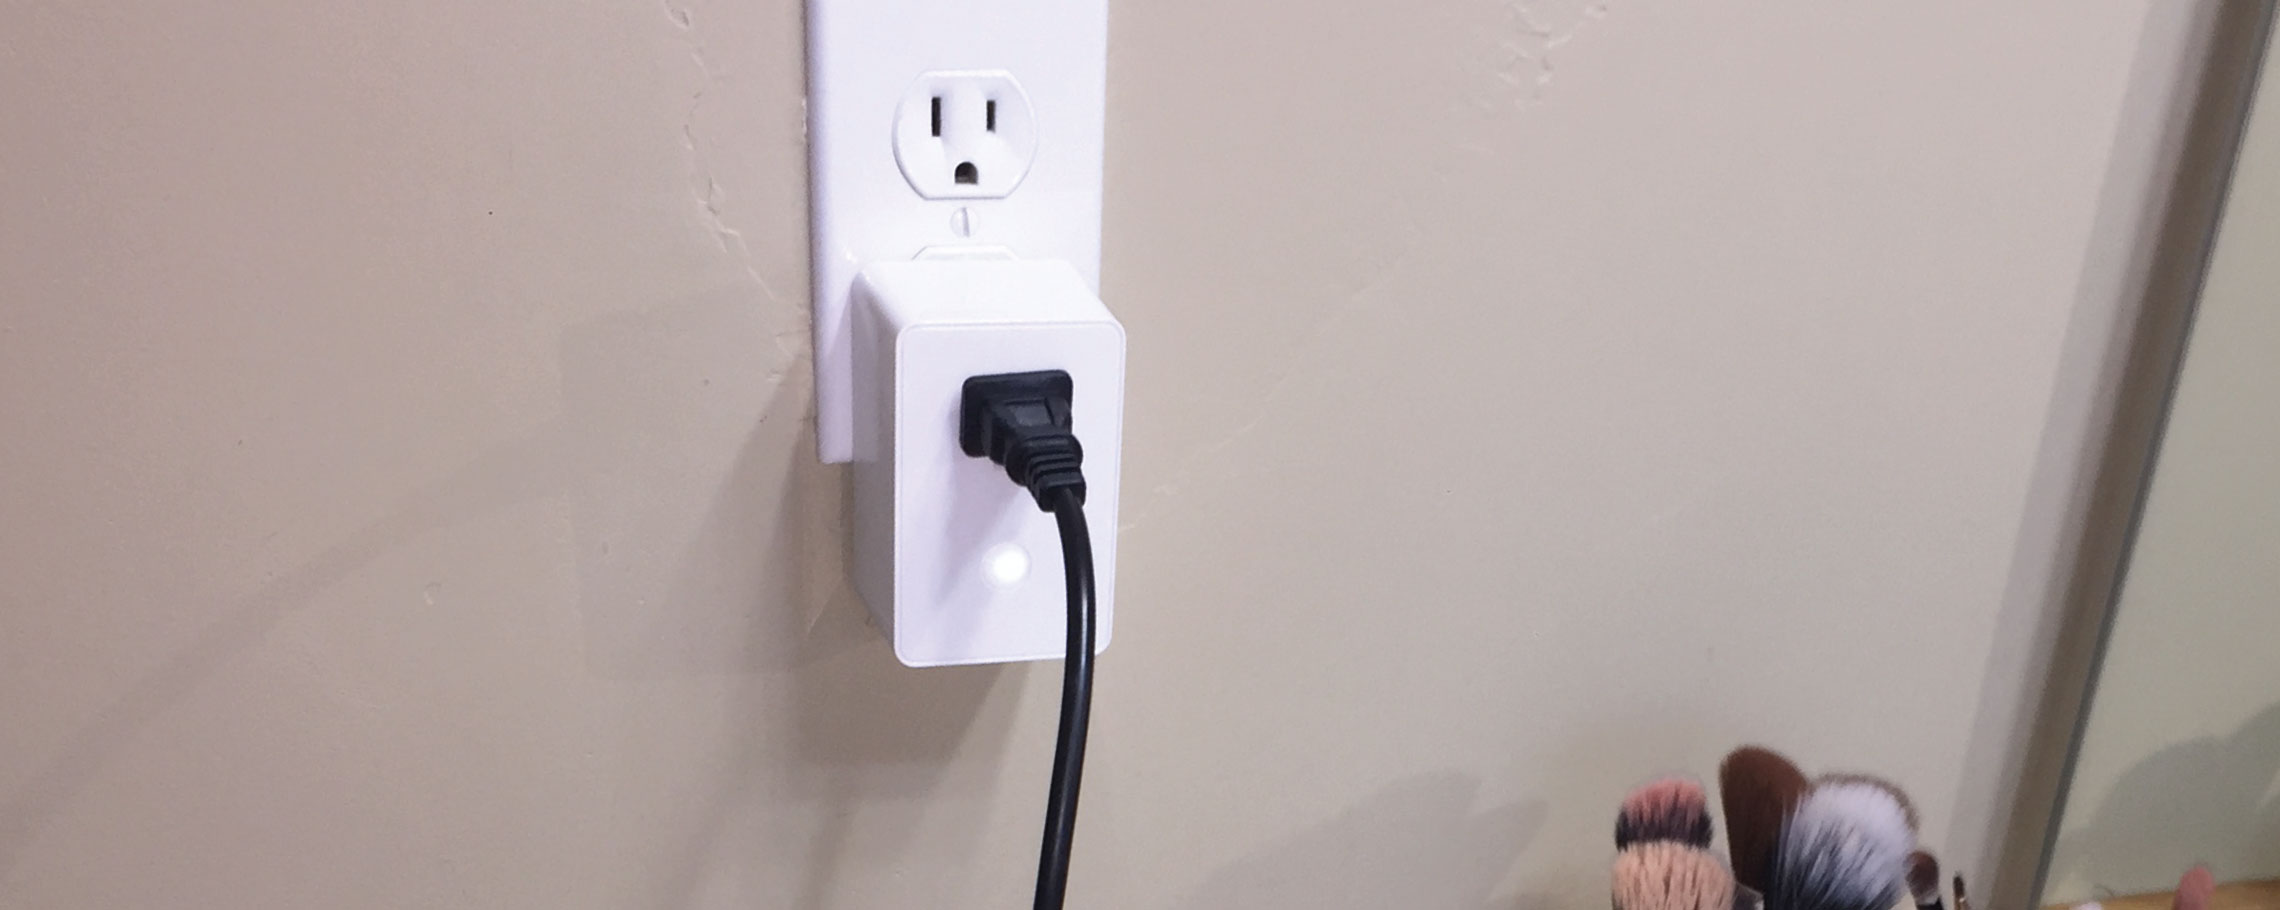 smart-outlet